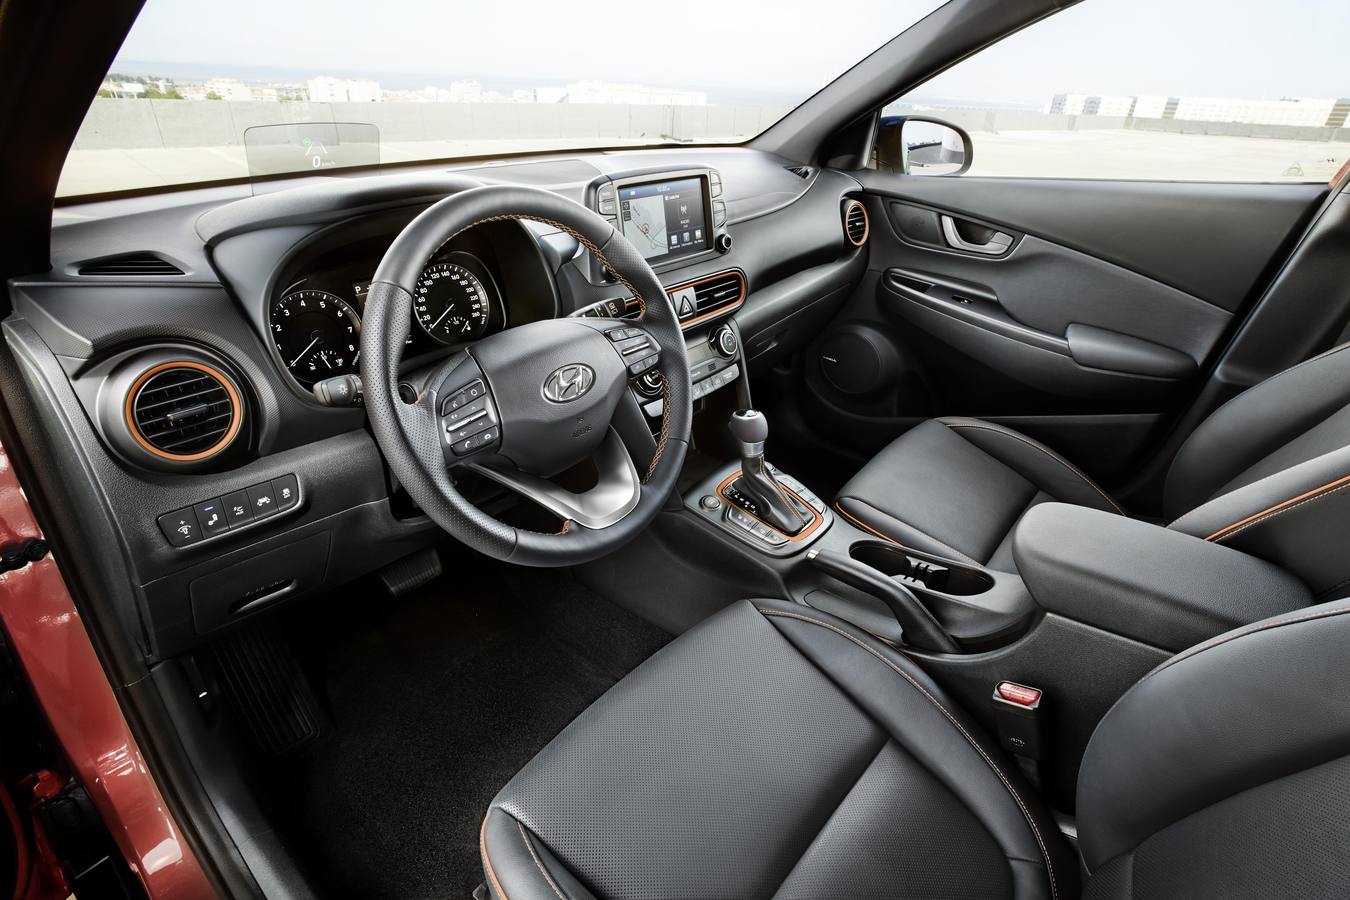 Hyundai amplía la gama con el Kona, un SUV compacto de poco más de 4,10 metros de longitud. A la venta desde 13.990 euros, se comercializa con tracción delantera y también total y cambio manual o automático. 